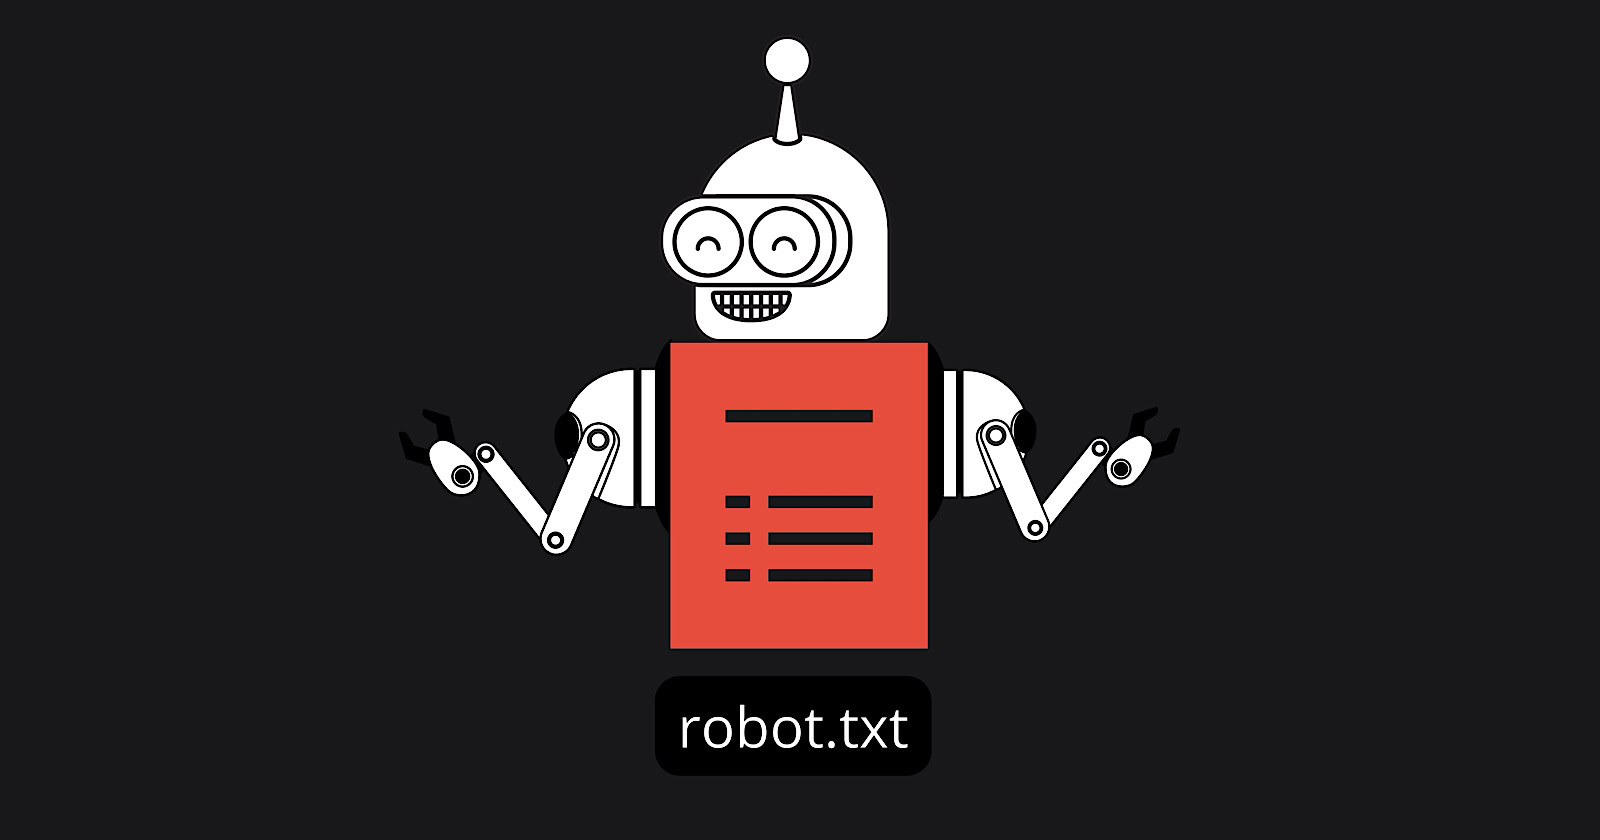 Robots.txt turns 30: Google highlights its hidden strengths